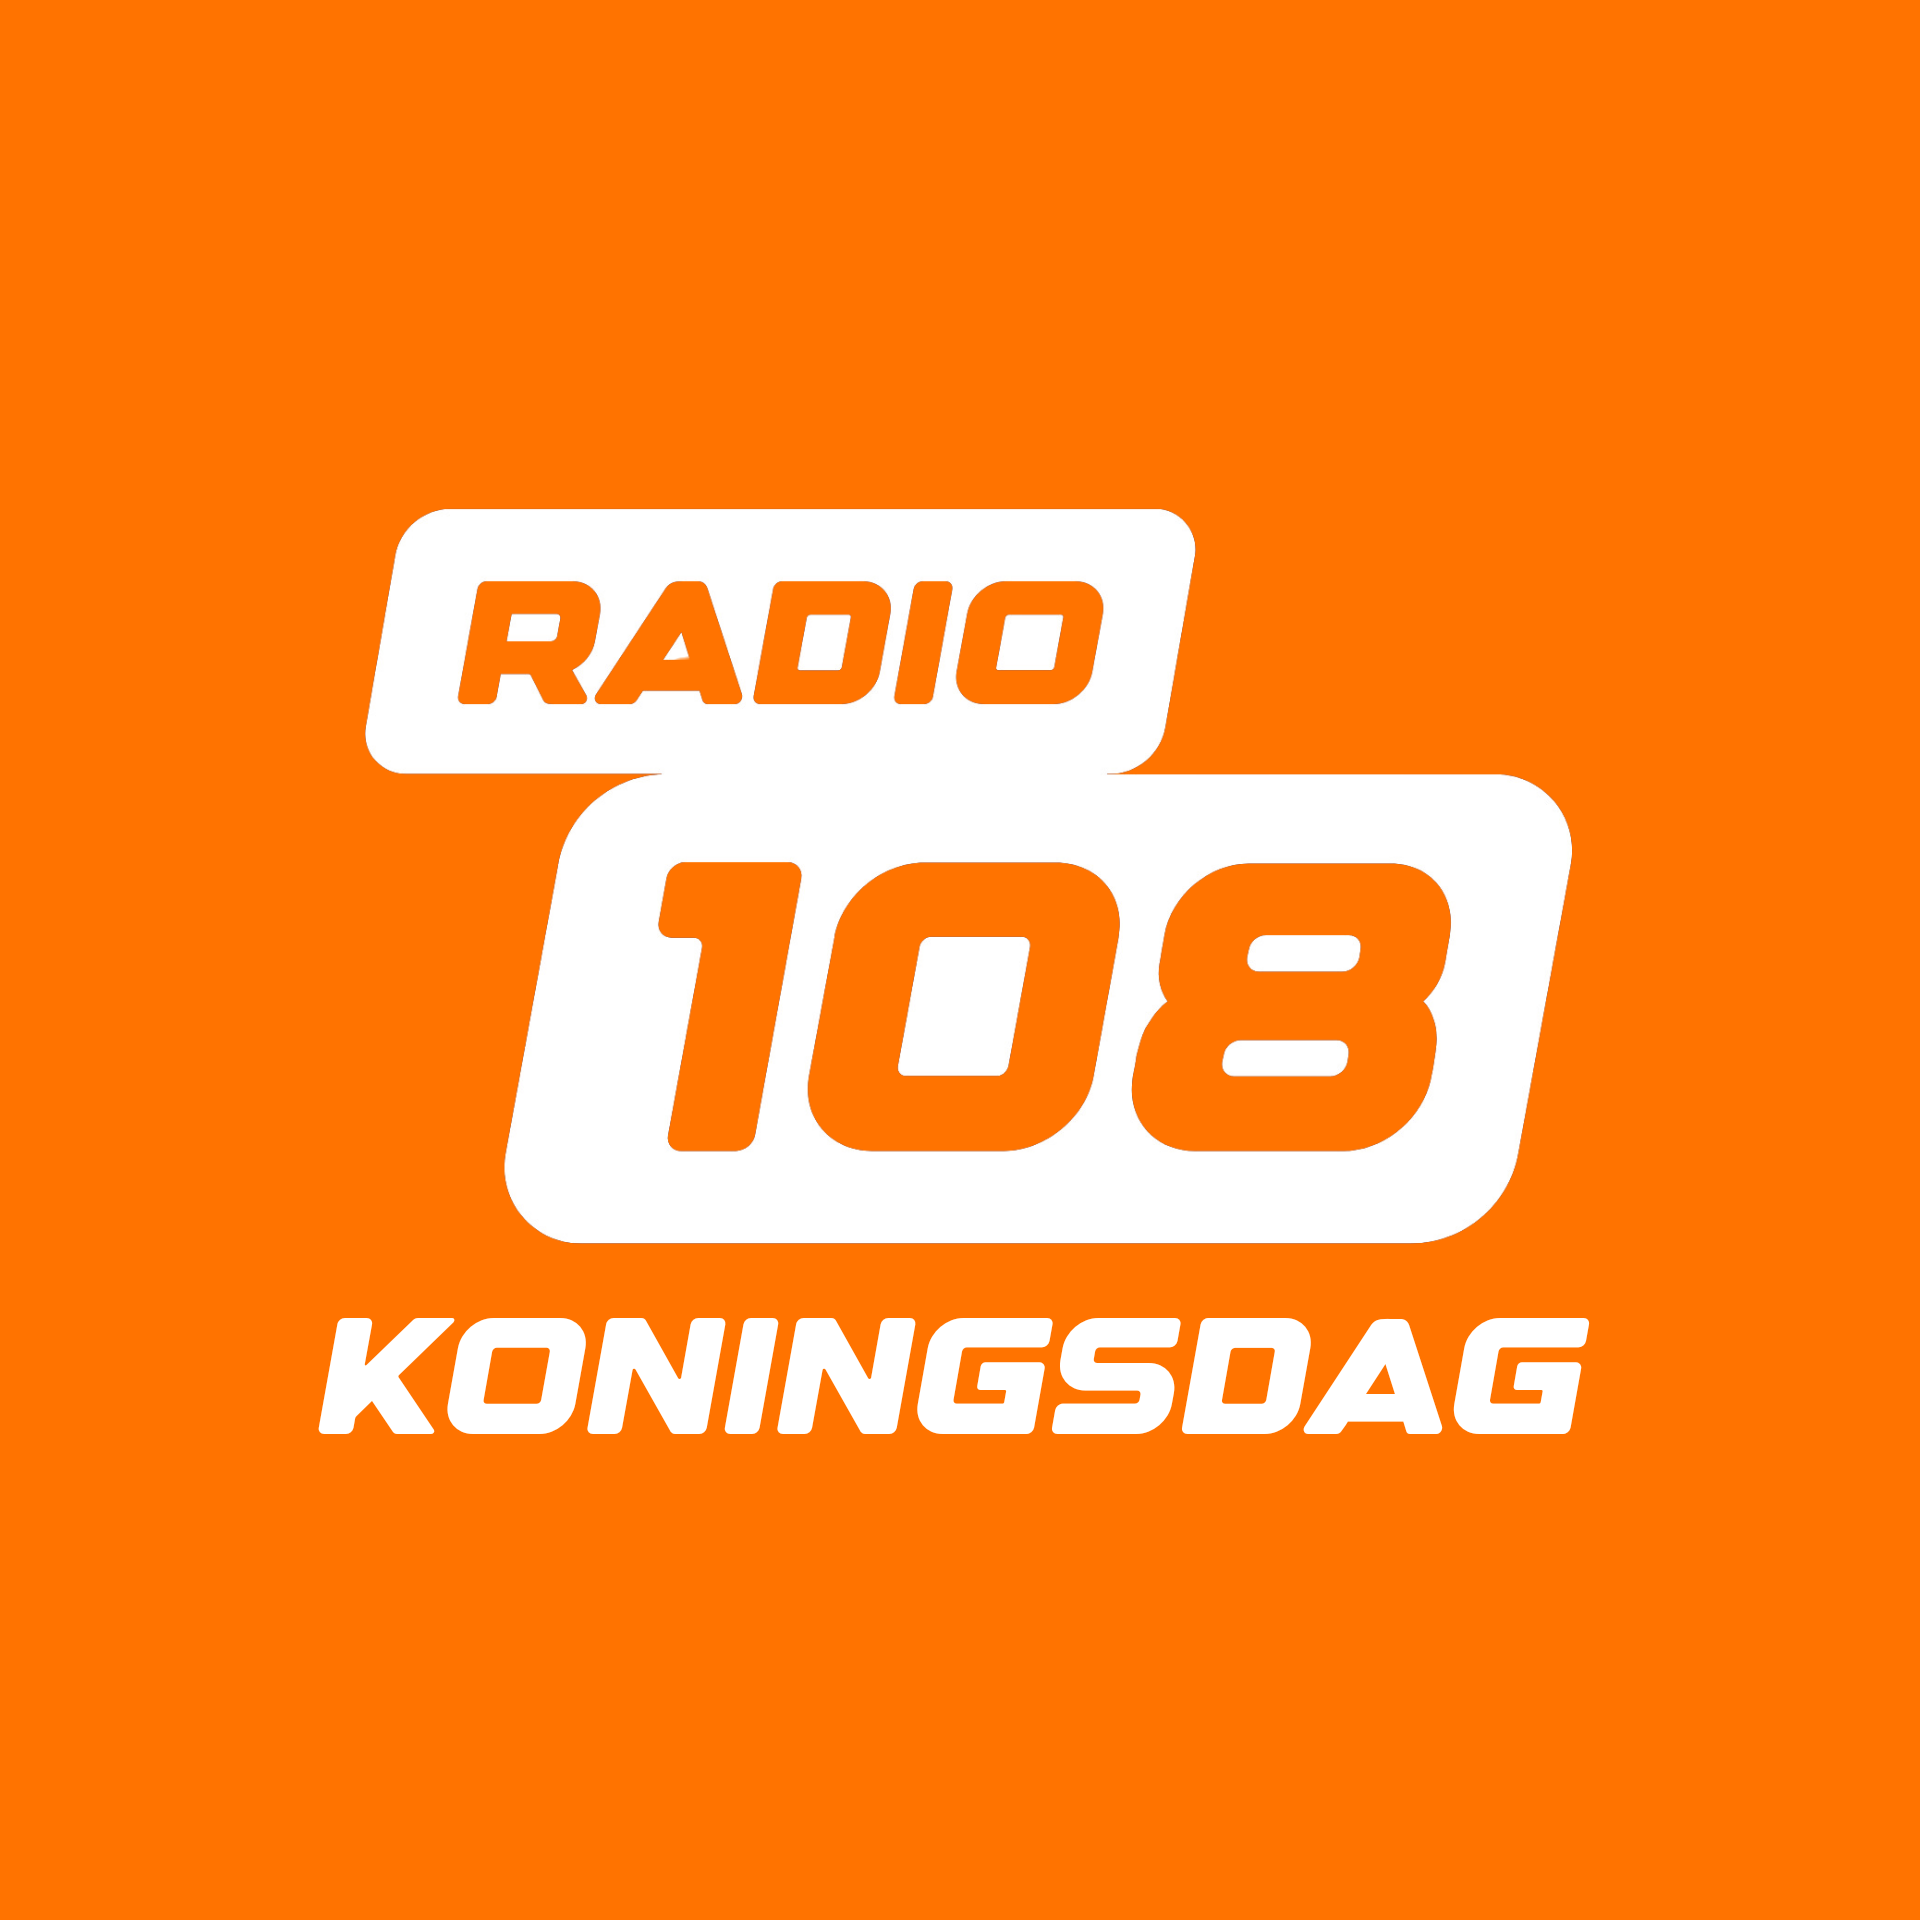 RADIO 108 - KONINGSDAG